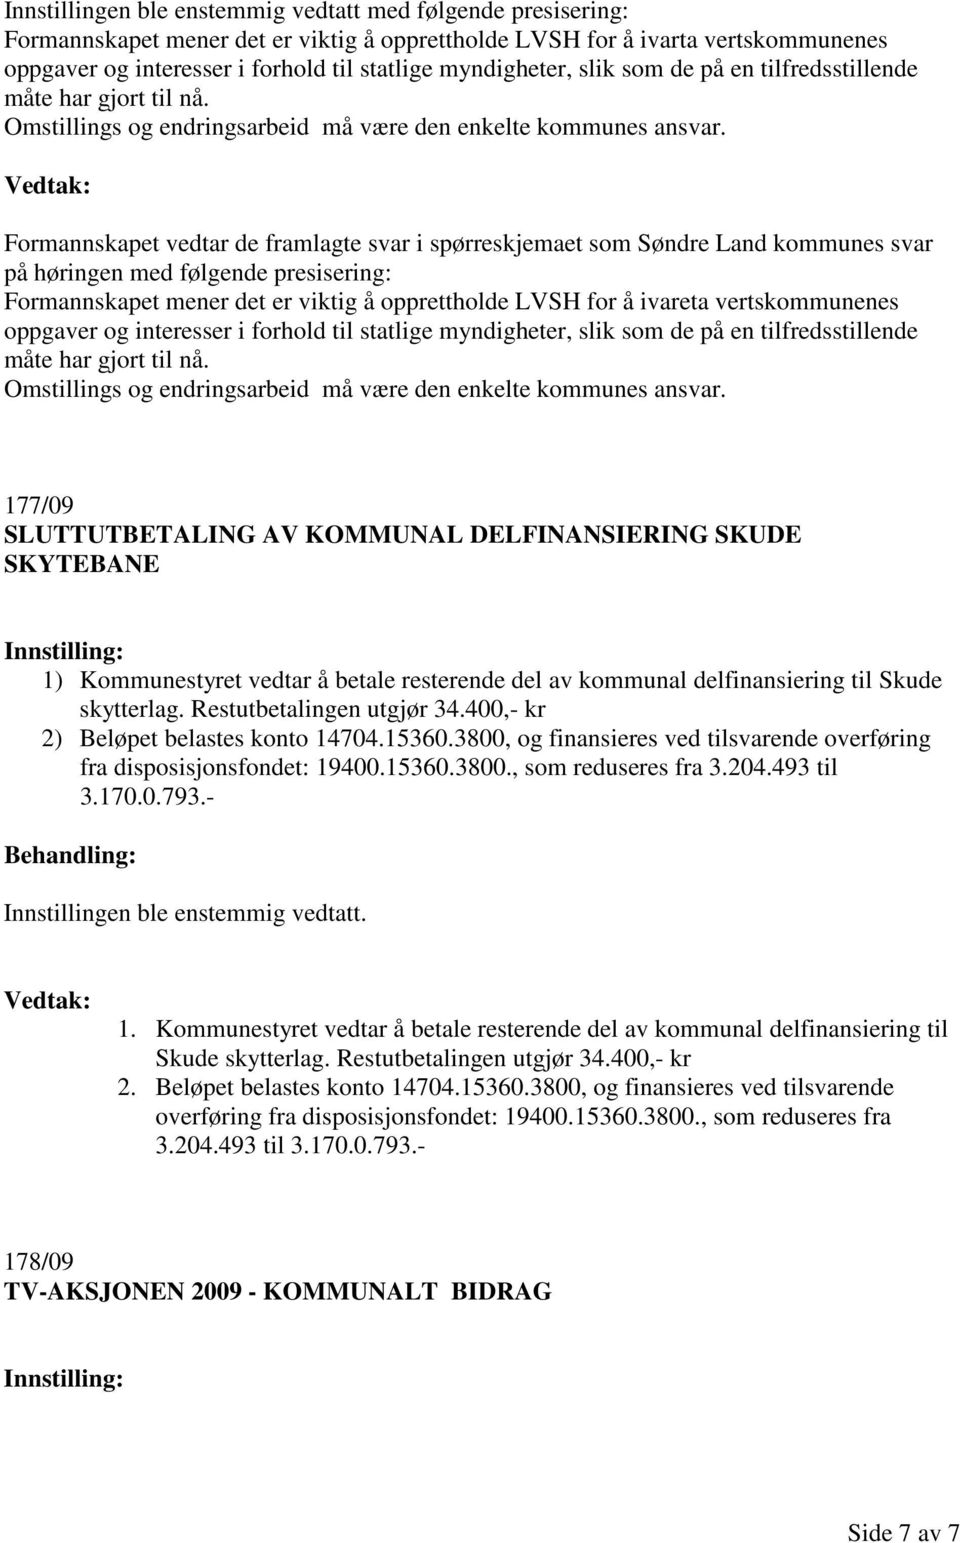 Formannskapet vedtar de framlagte svar i spørreskjemaet som Søndre Land kommunes svar på høringen med følgende presisering: Formannskapet mener det er viktig å opprettholde LVSH for å ivareta